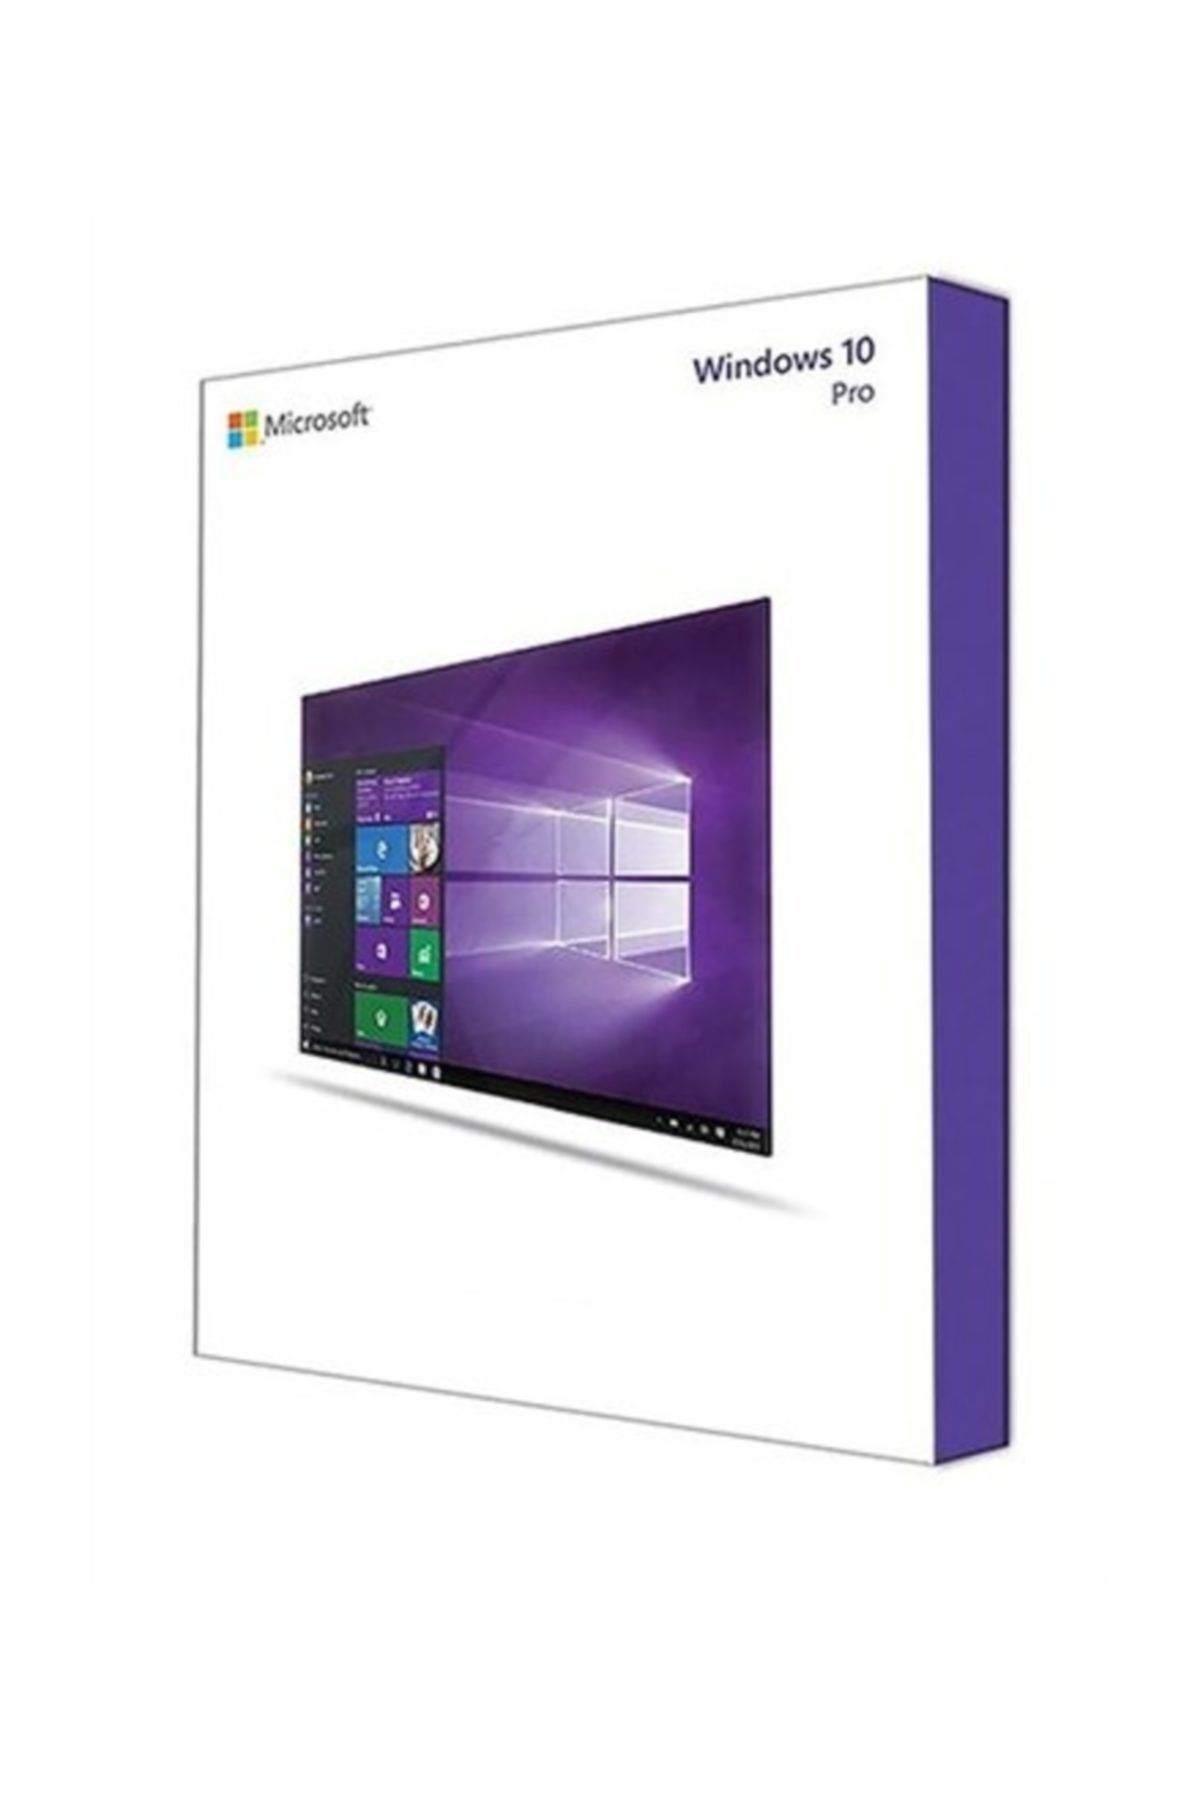 Microsoft Wındows 10 Pro Fqc-09127 32/64bit Tr (box) Türkçe